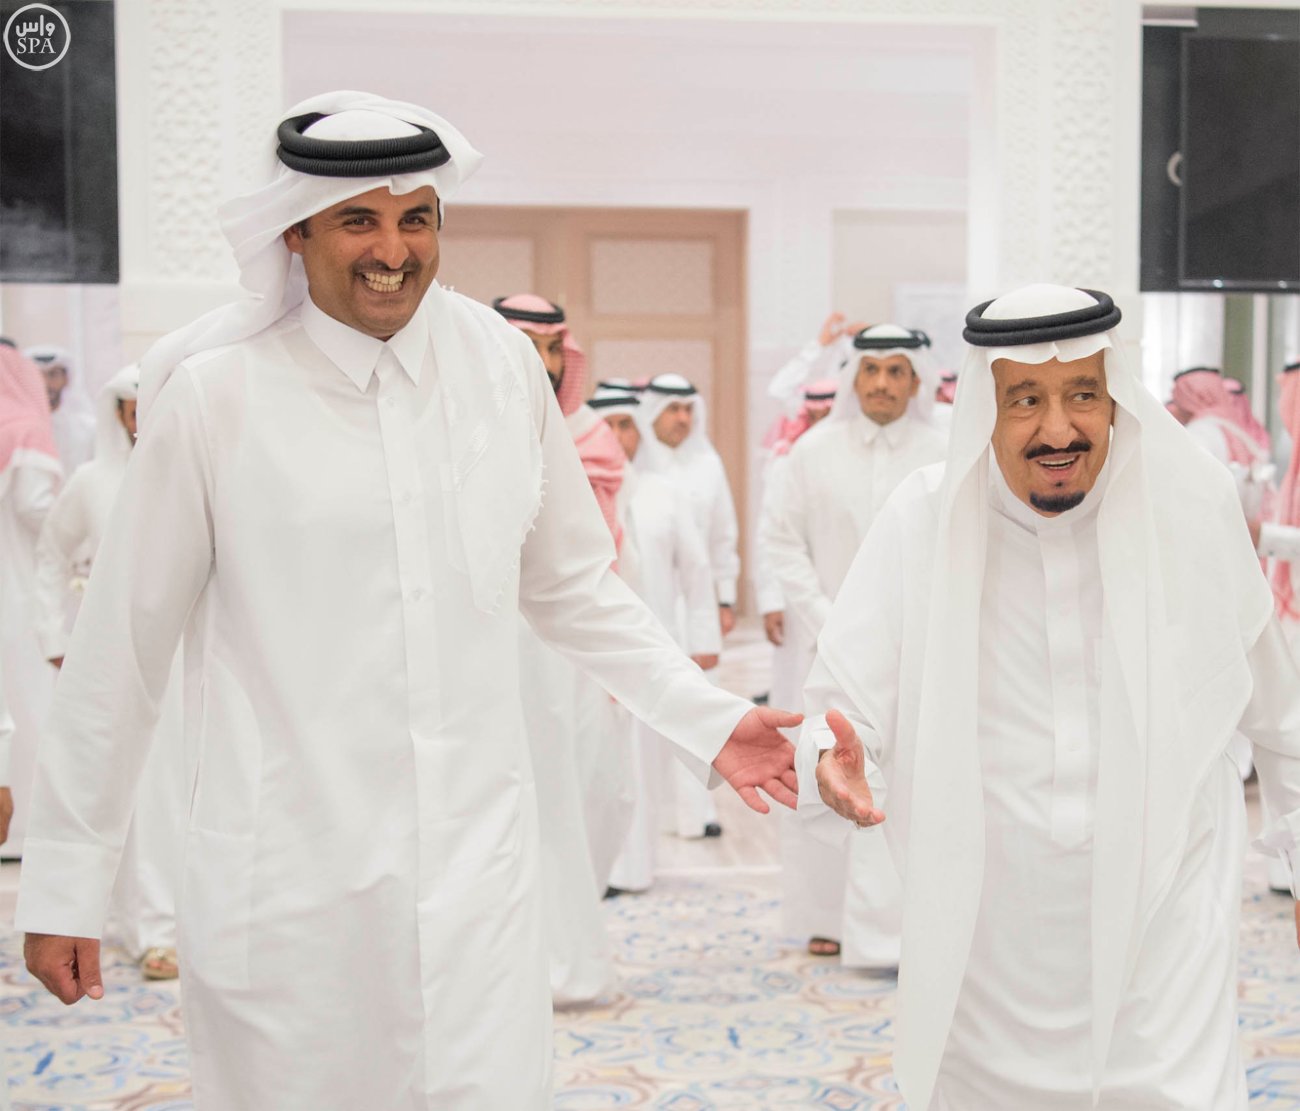 أمير قطر يبادر ويهاتف الملك سلمان وولي العهد مهنئا بحلول عيد الأضحى